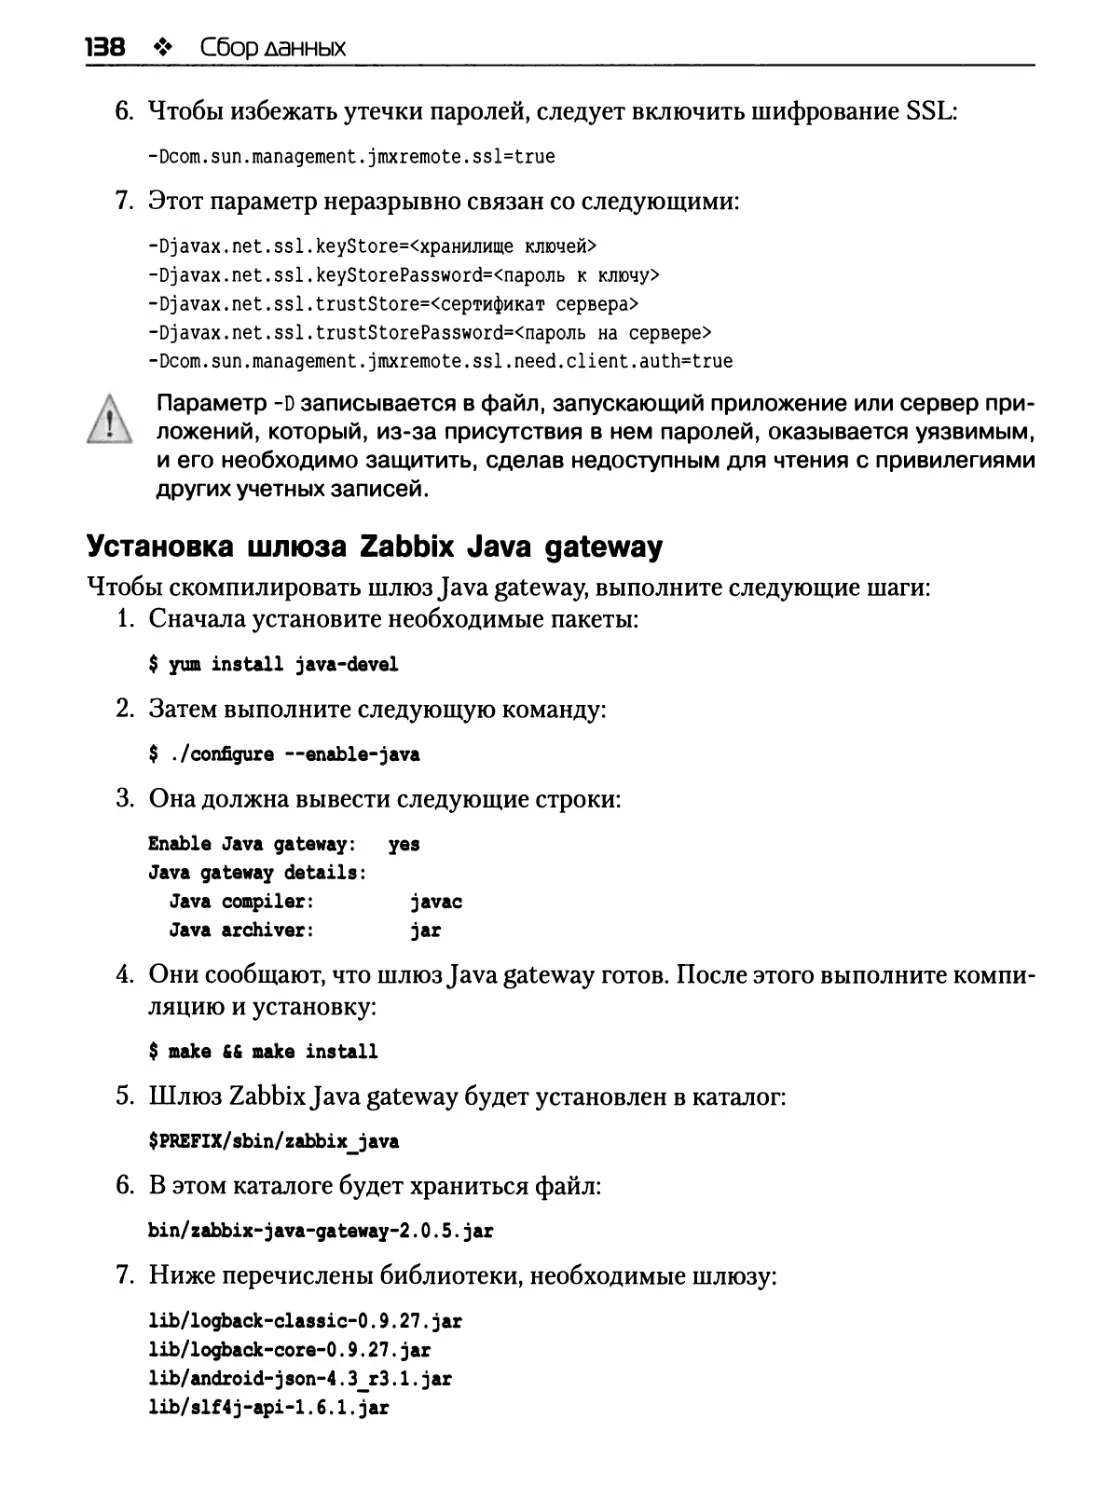 Установка шлюза Zabbix Java gateway